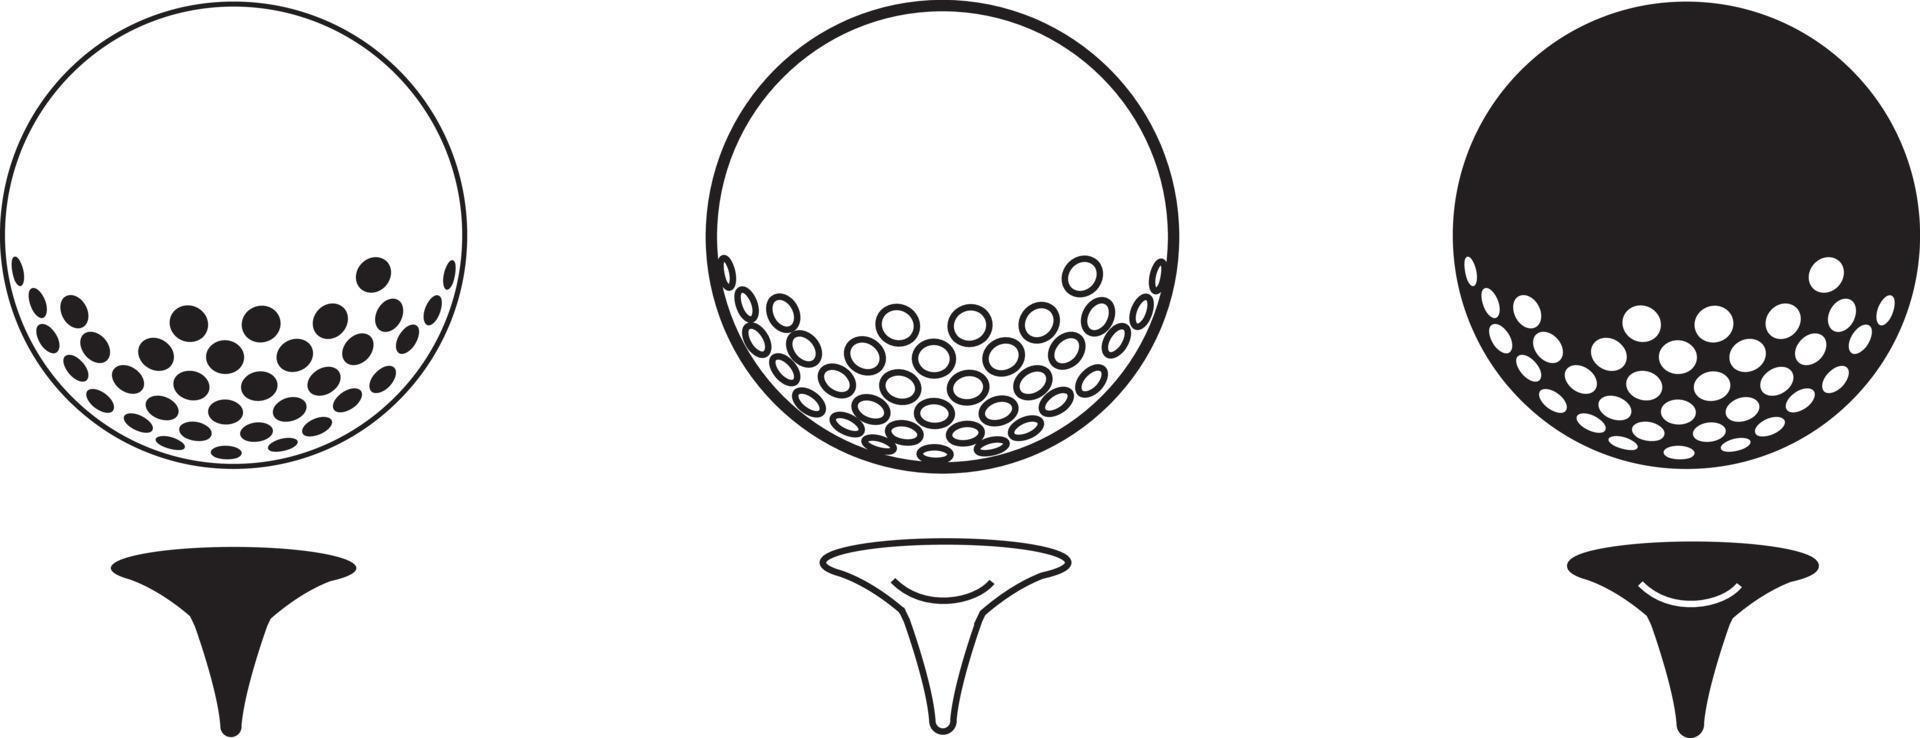 ilustração de ícone de vetor na moda da bola de golfe no material preto e branco do tee